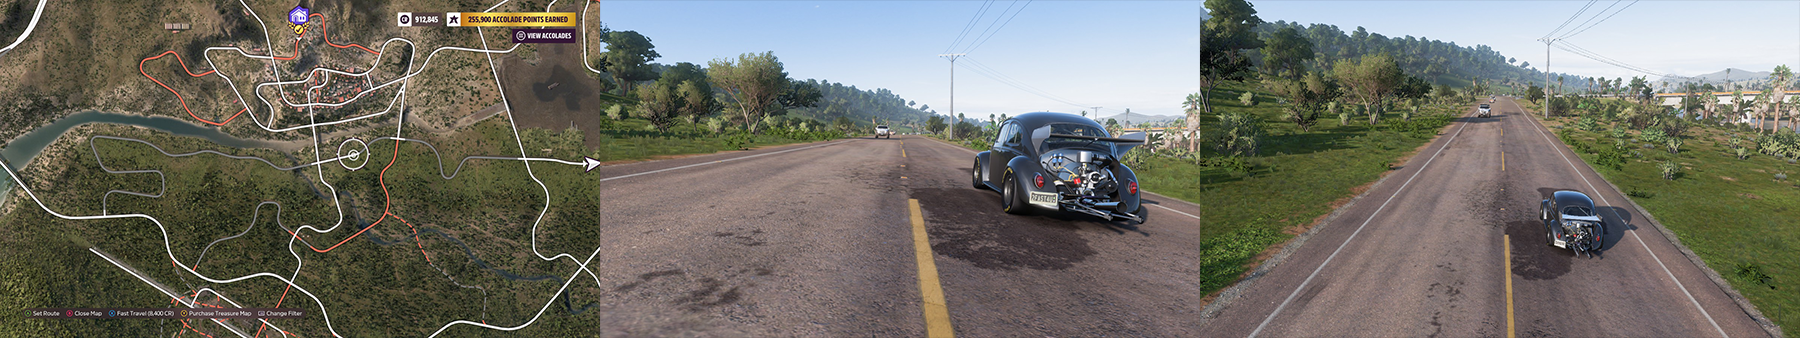 Forza Horizon 5 Tips & Trick for Drag Racer - Immersive 